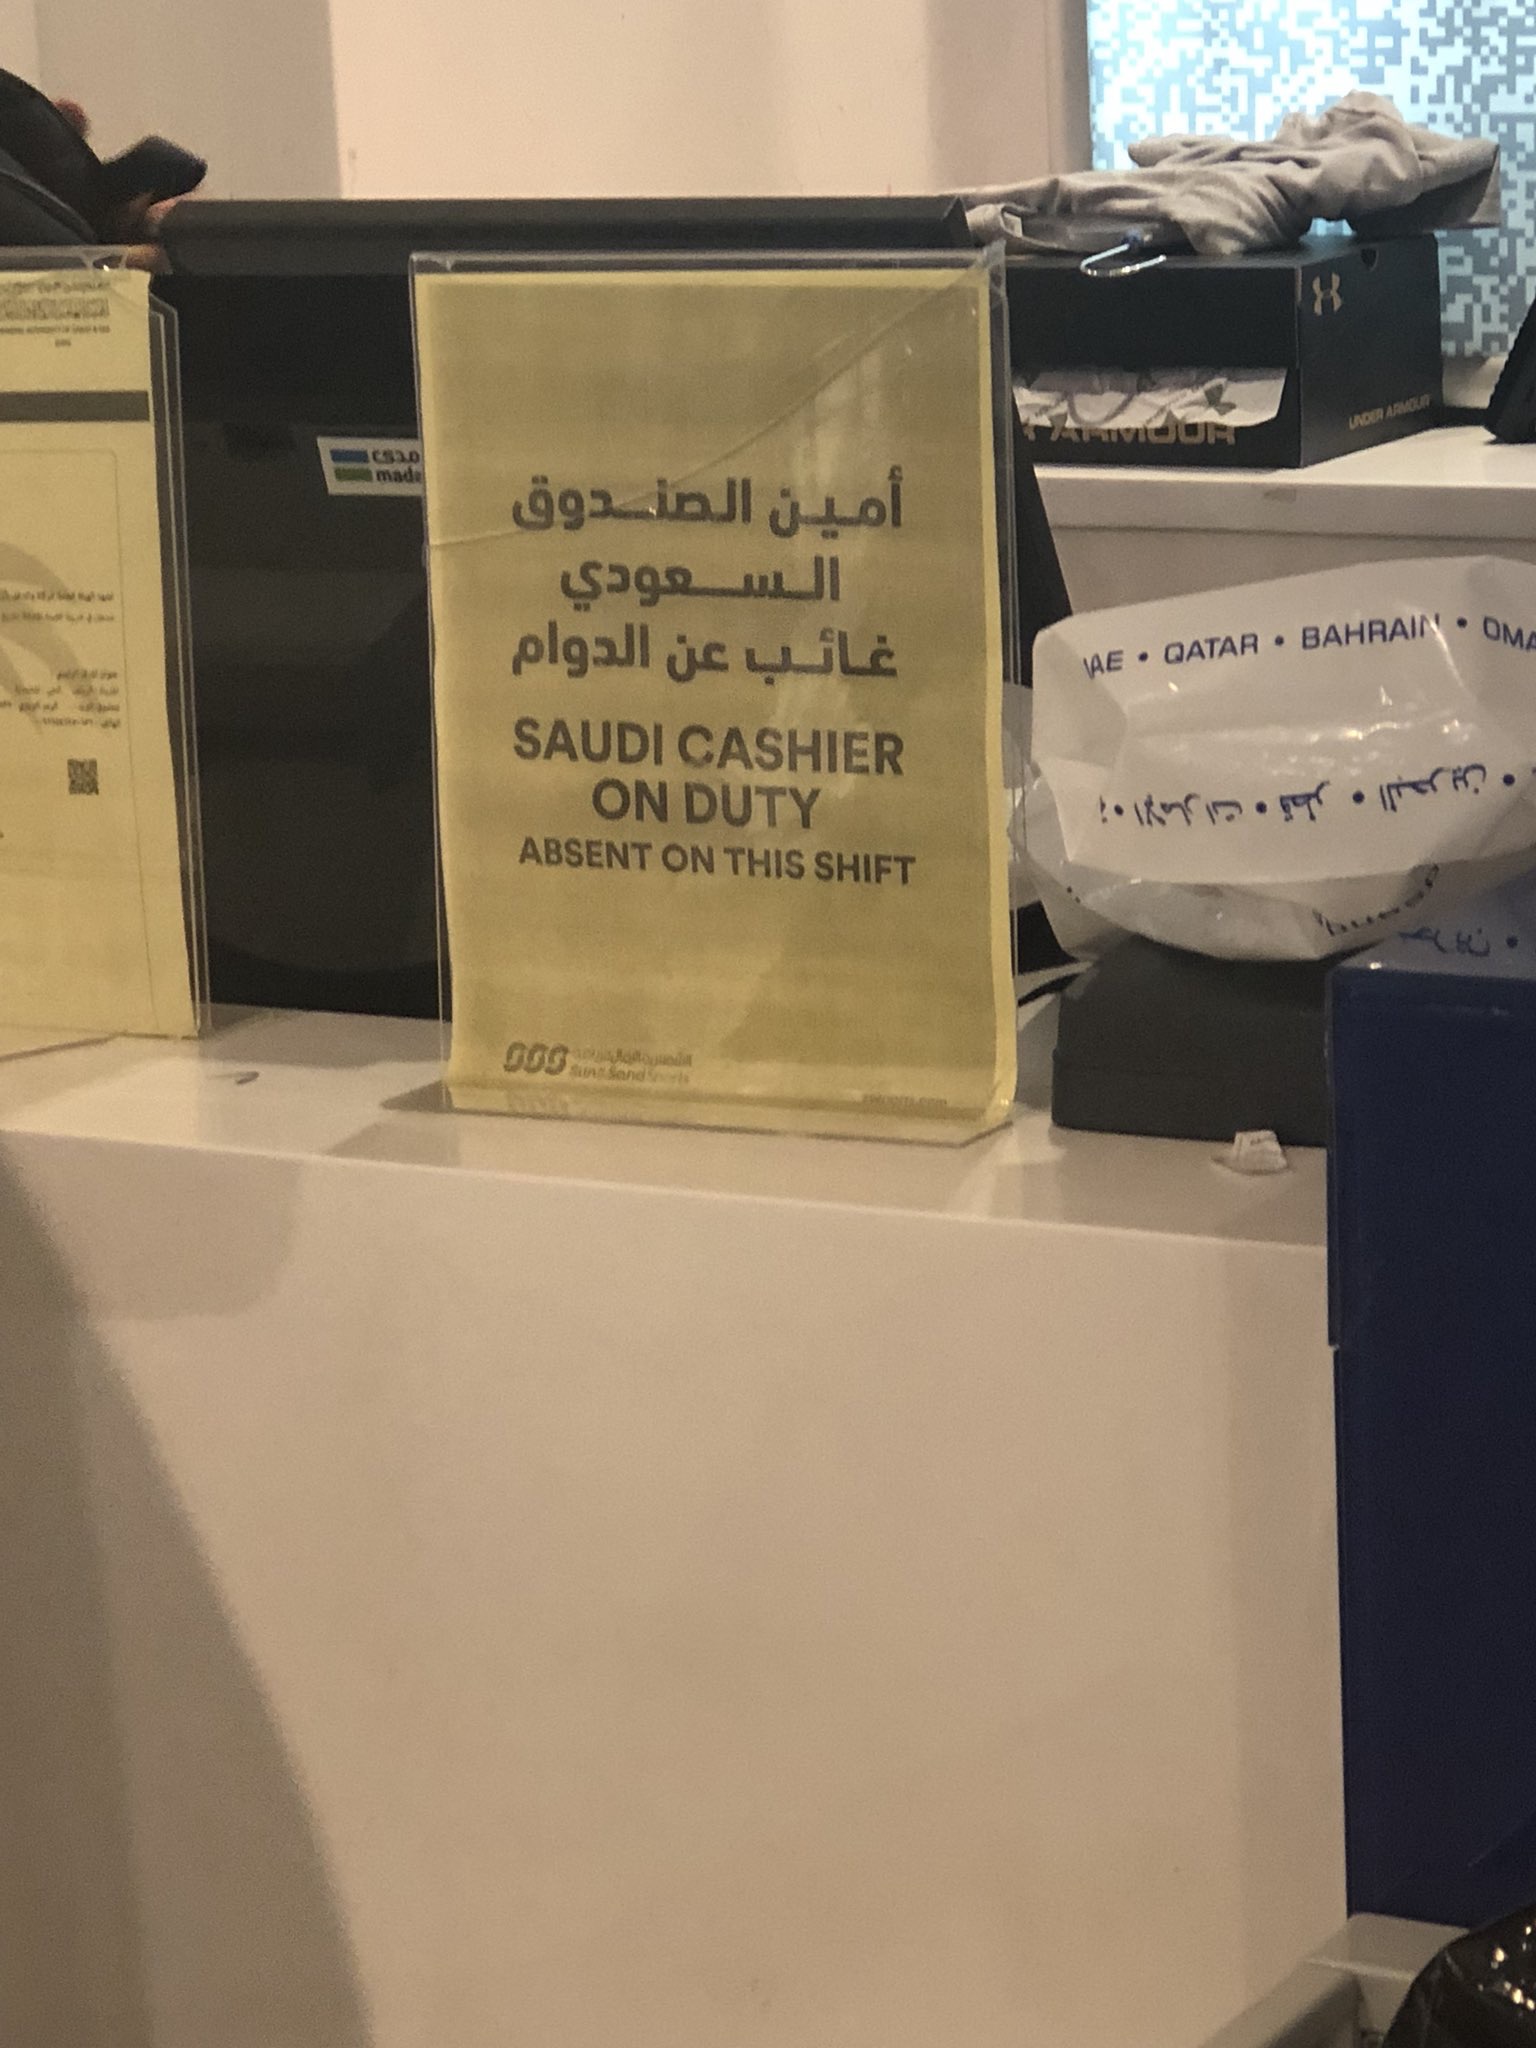 أمين الصندوق السعودي غائب عن الدوام.. تستفز المواطنين